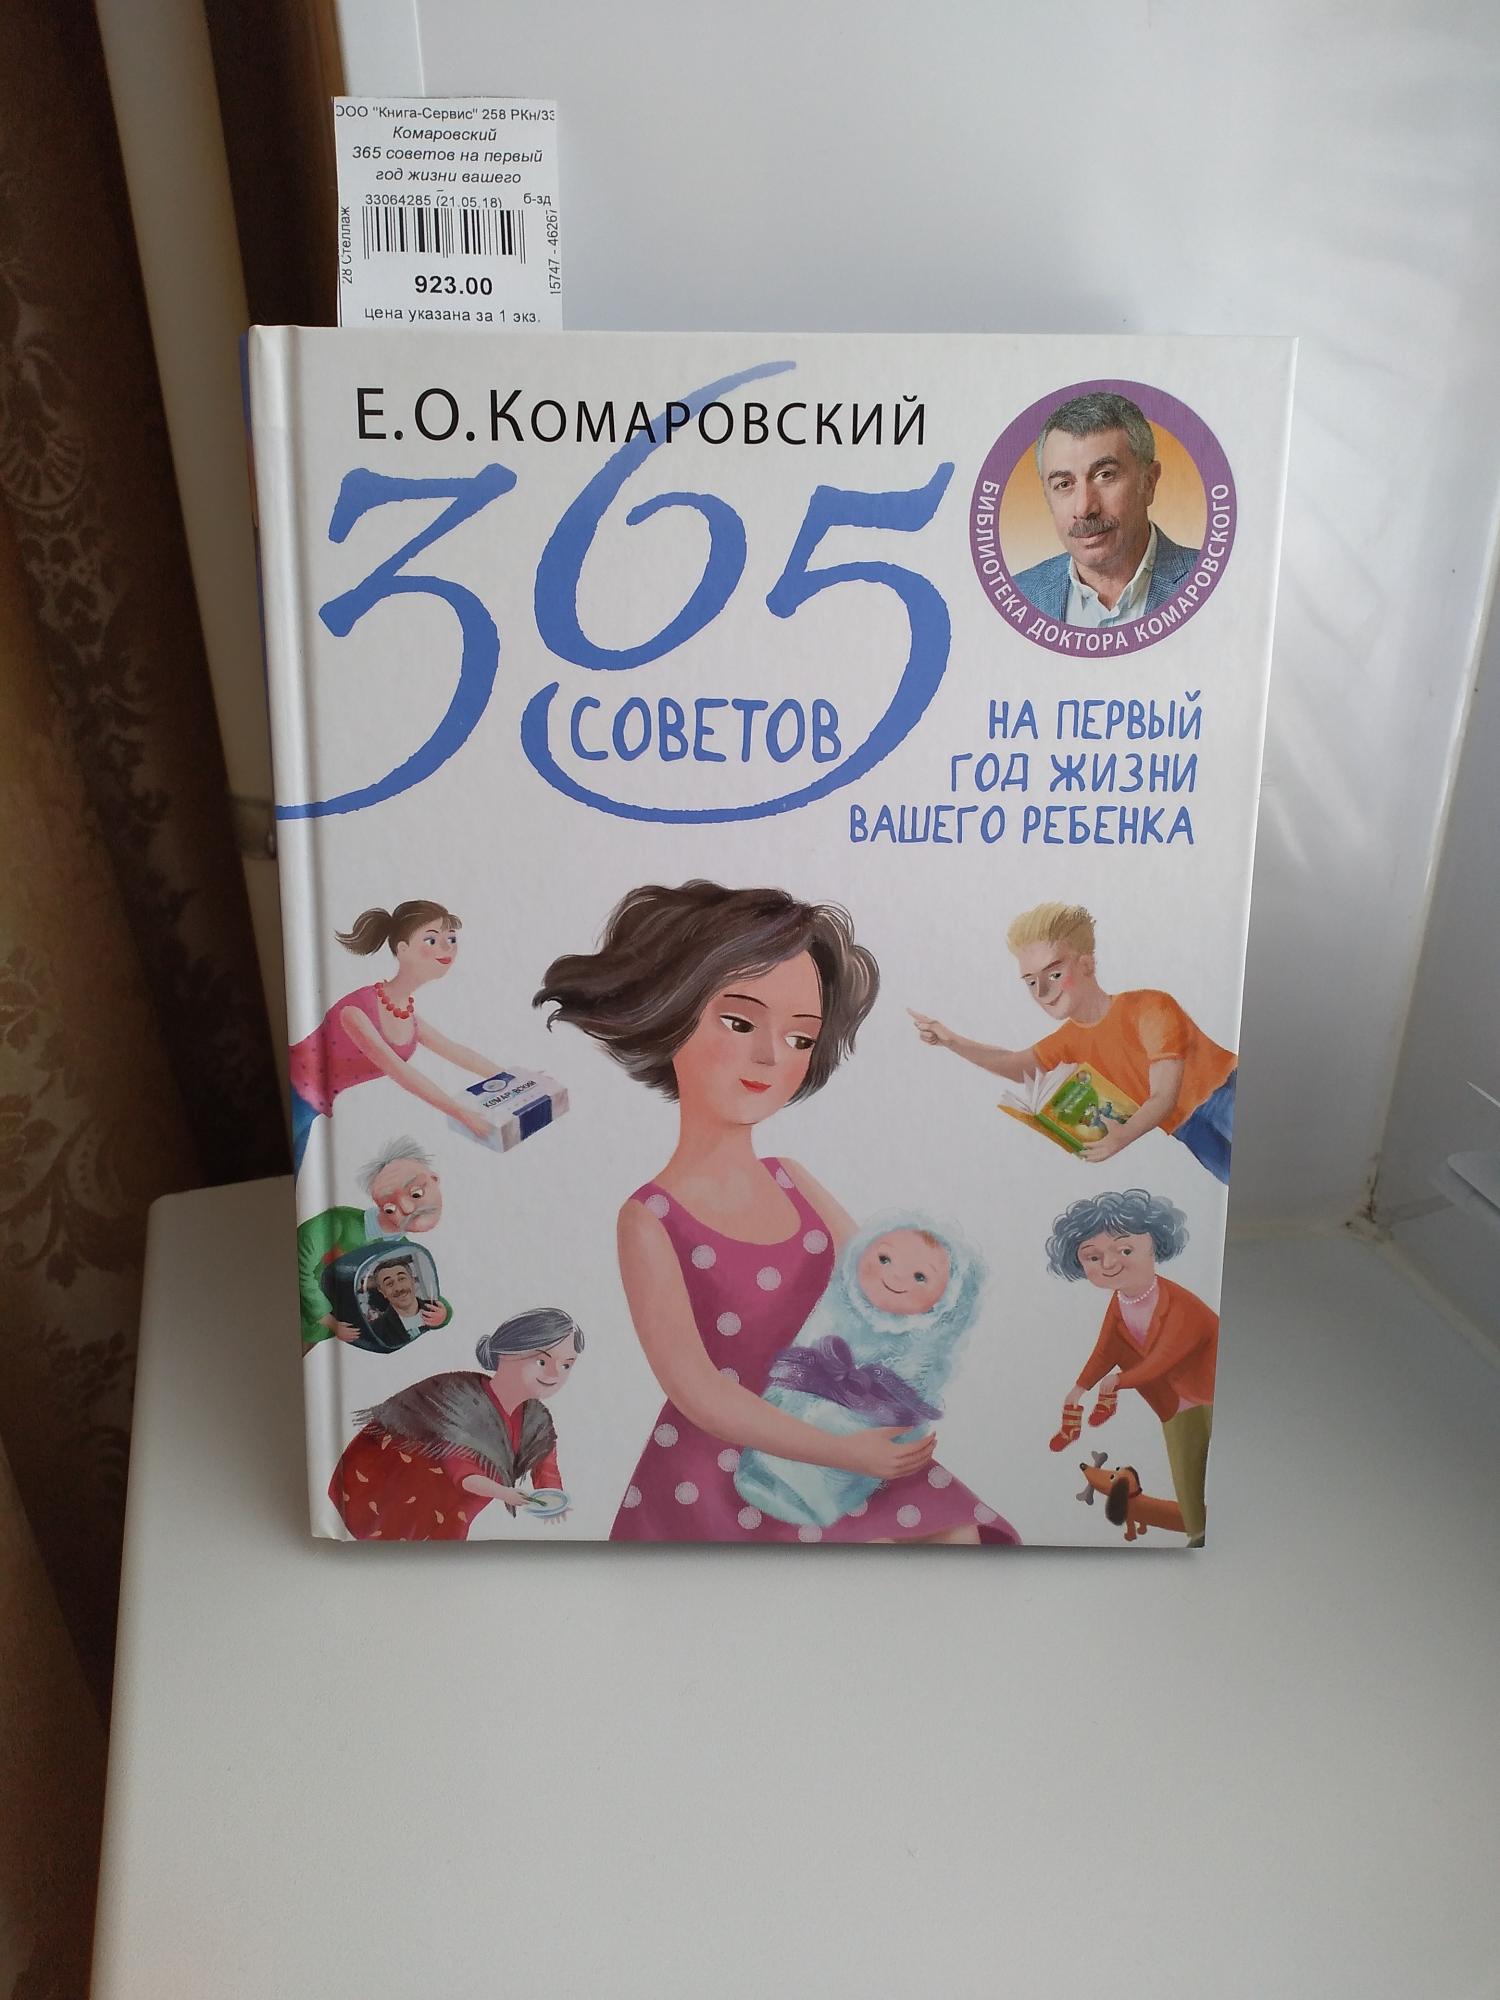 Комаровский 365 советов на первый год жизни